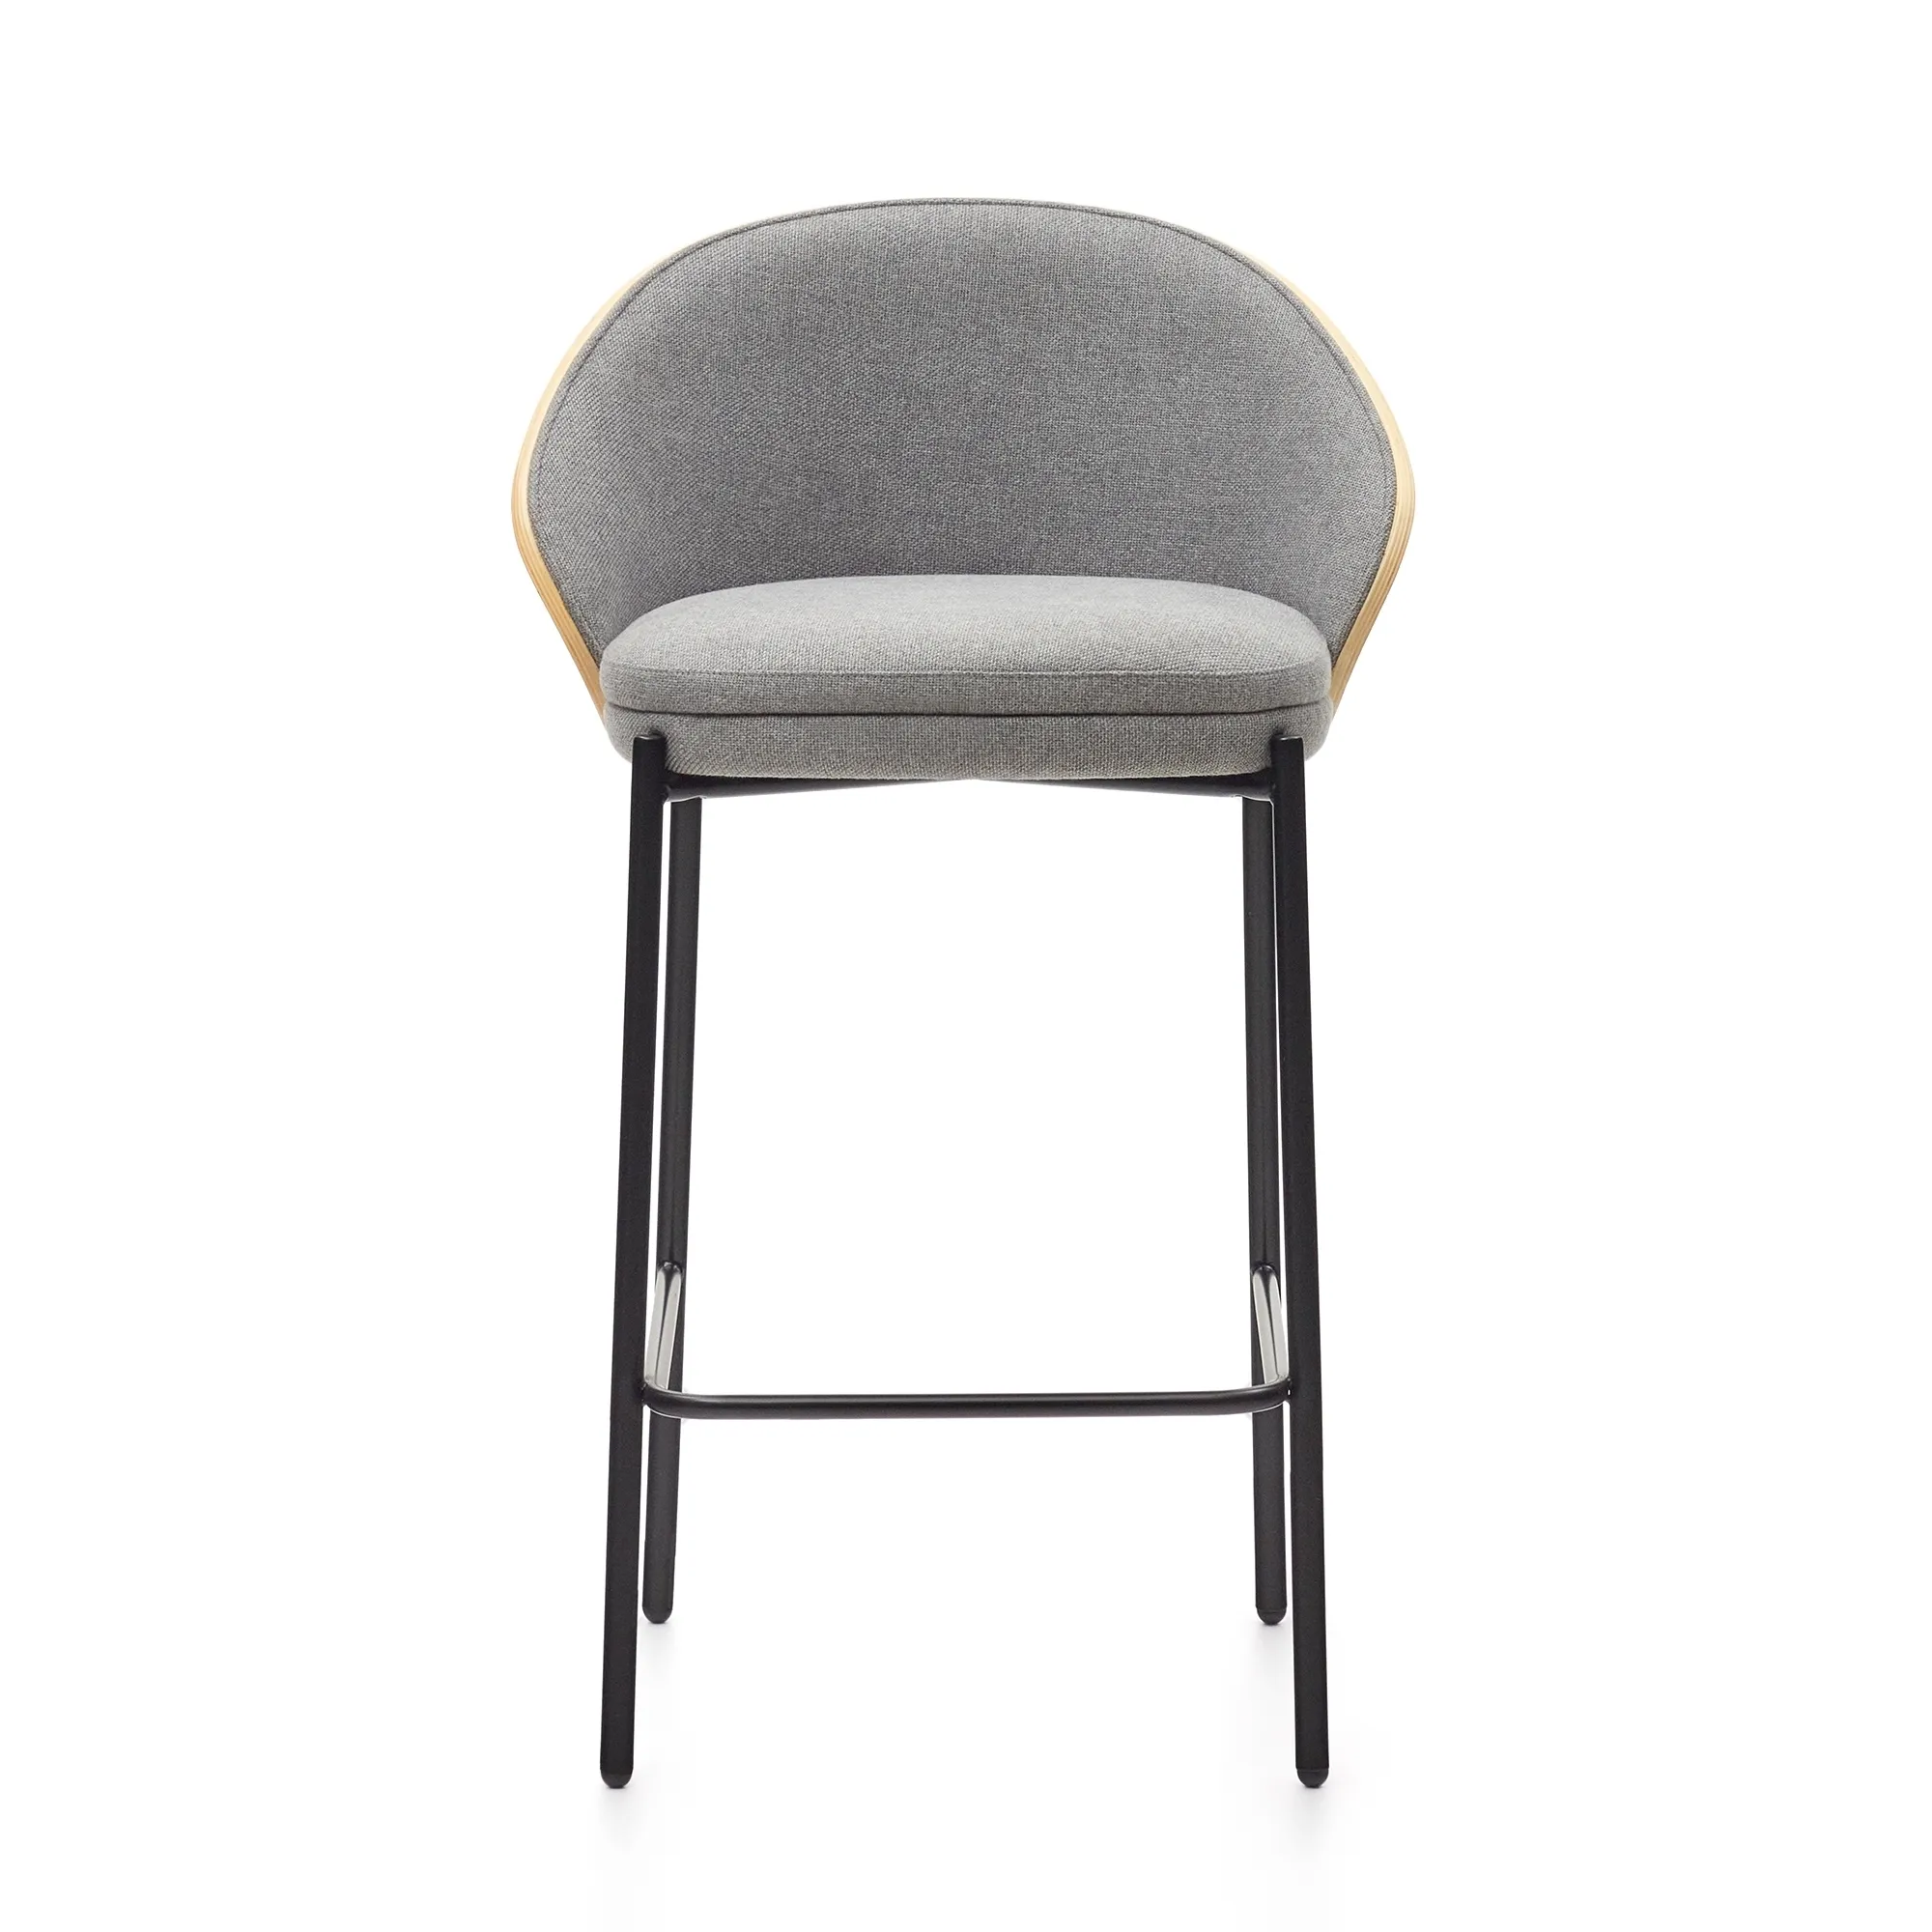 Барный стул La Forma Eamy светло-серый с отделкой из шпона ясеня 178070